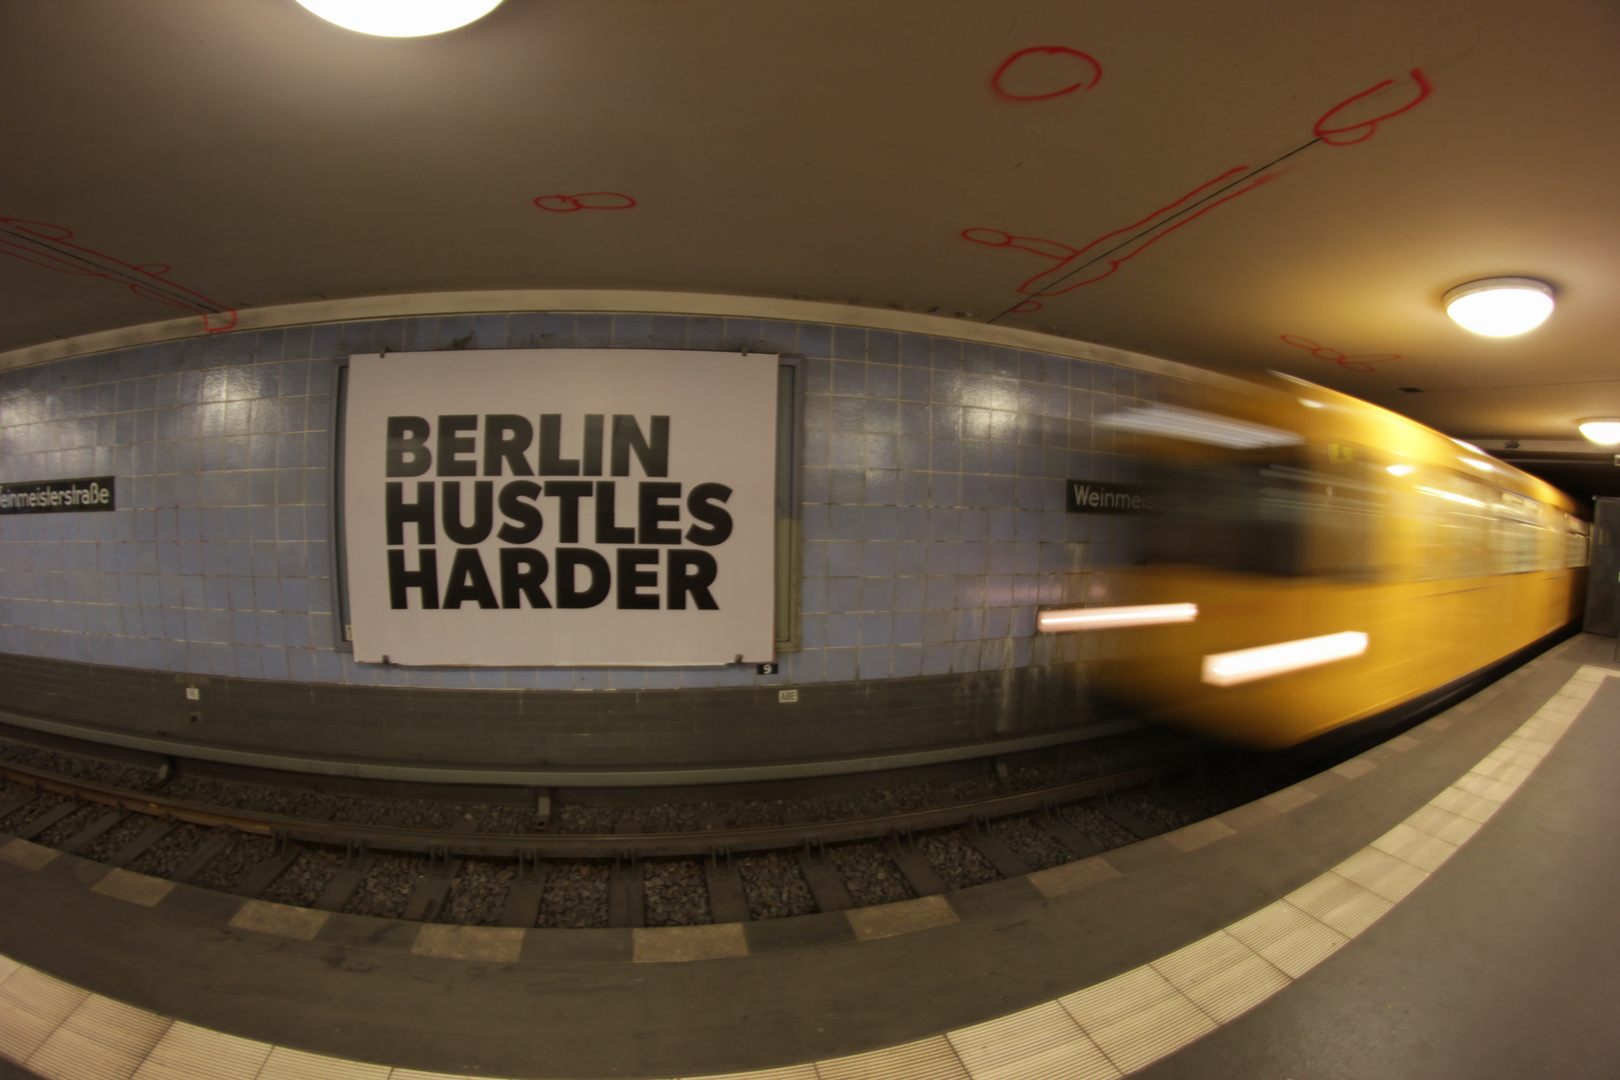 Berlin Hustles Harder